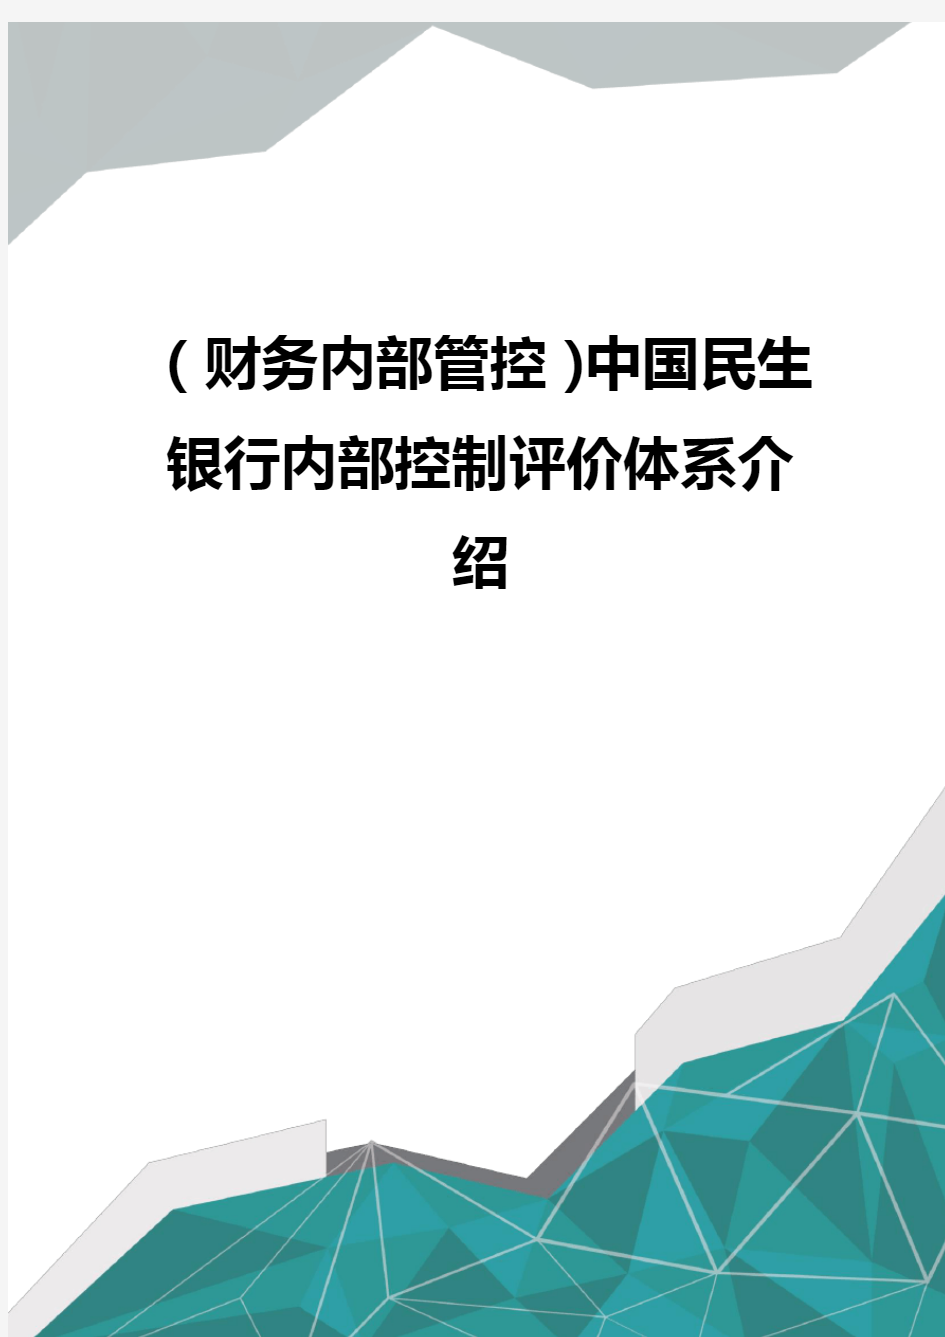 (财务内部管控)中国民生银行内部控制评价体系介绍